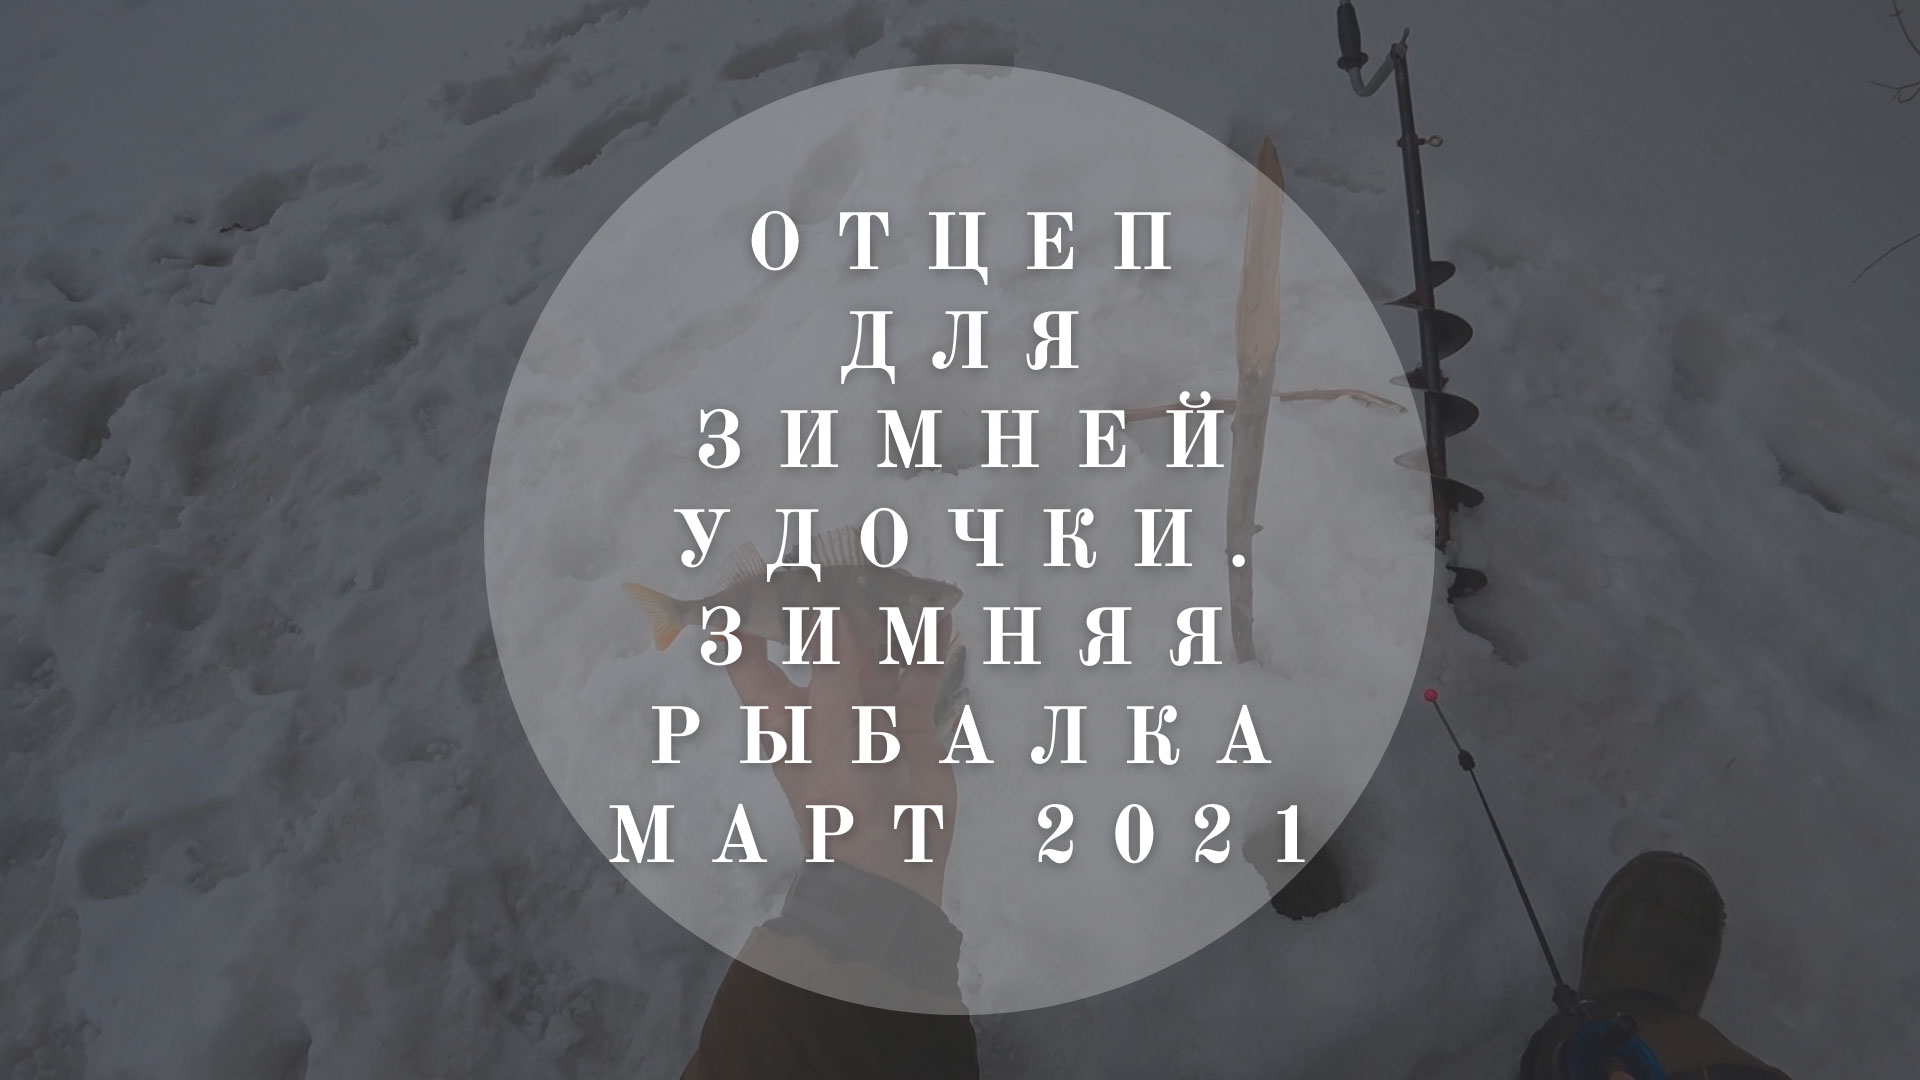 Отцеп для зимней рыбалки | Как отцепить удочку | Рыбалка на окуня - март 2021 | В гостях у Владимира